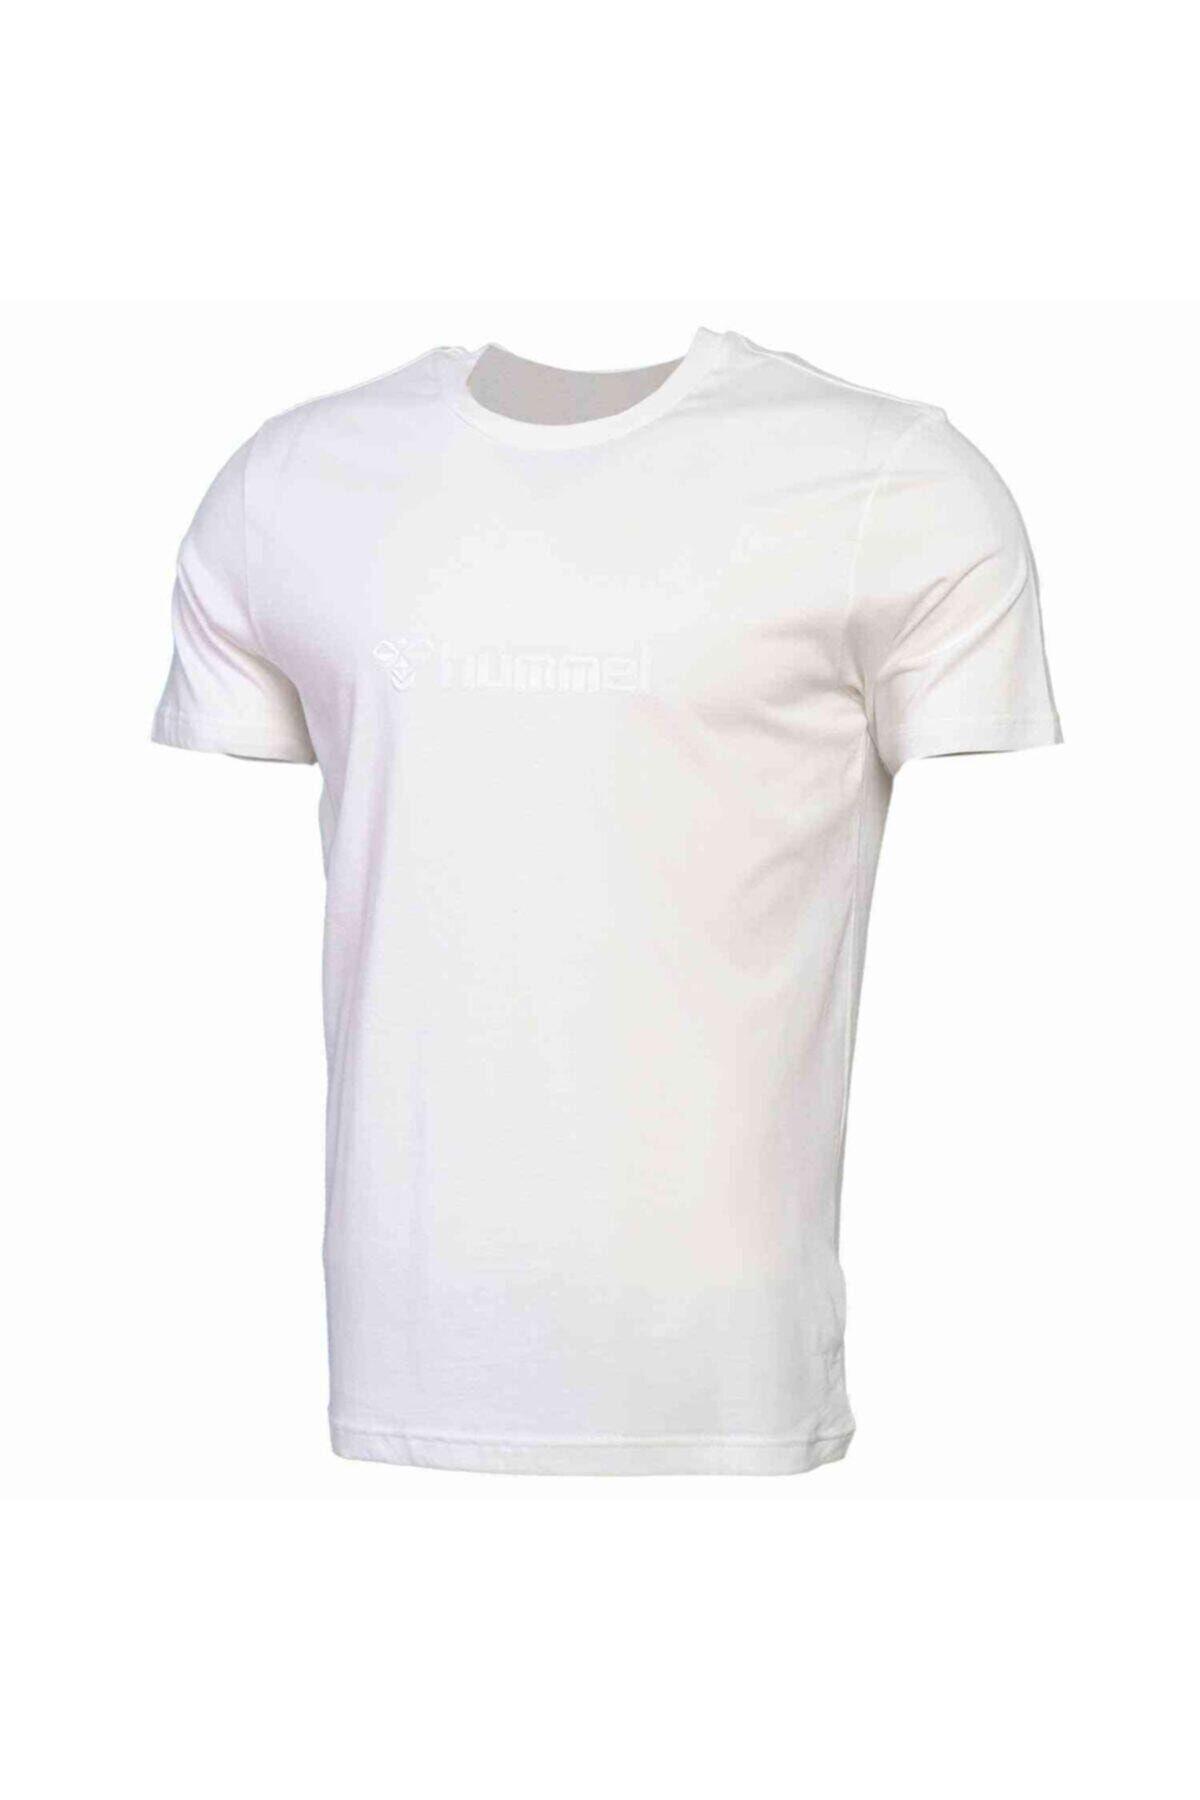 تی شرت کوزنزا بافتنی مردانه سفید  هومل Hummel (برند دانمارک)